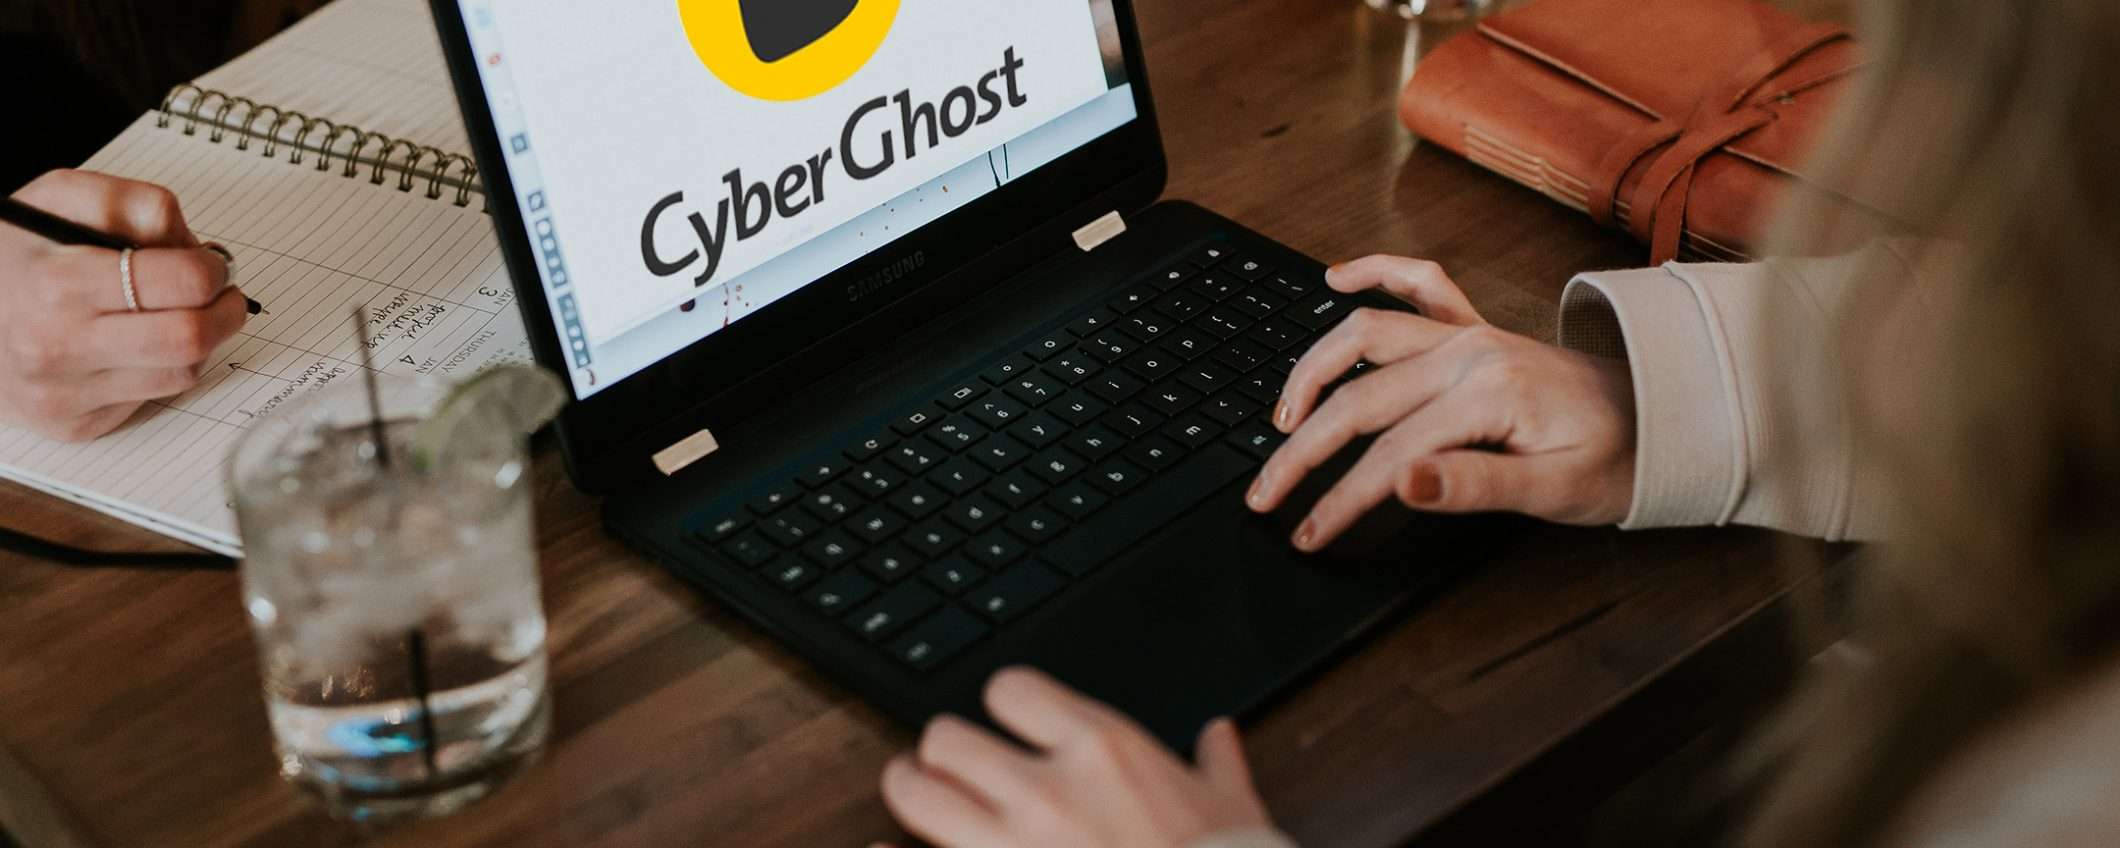 Cyberghost: offerta a 1,89 euro fino al 3 Aprile